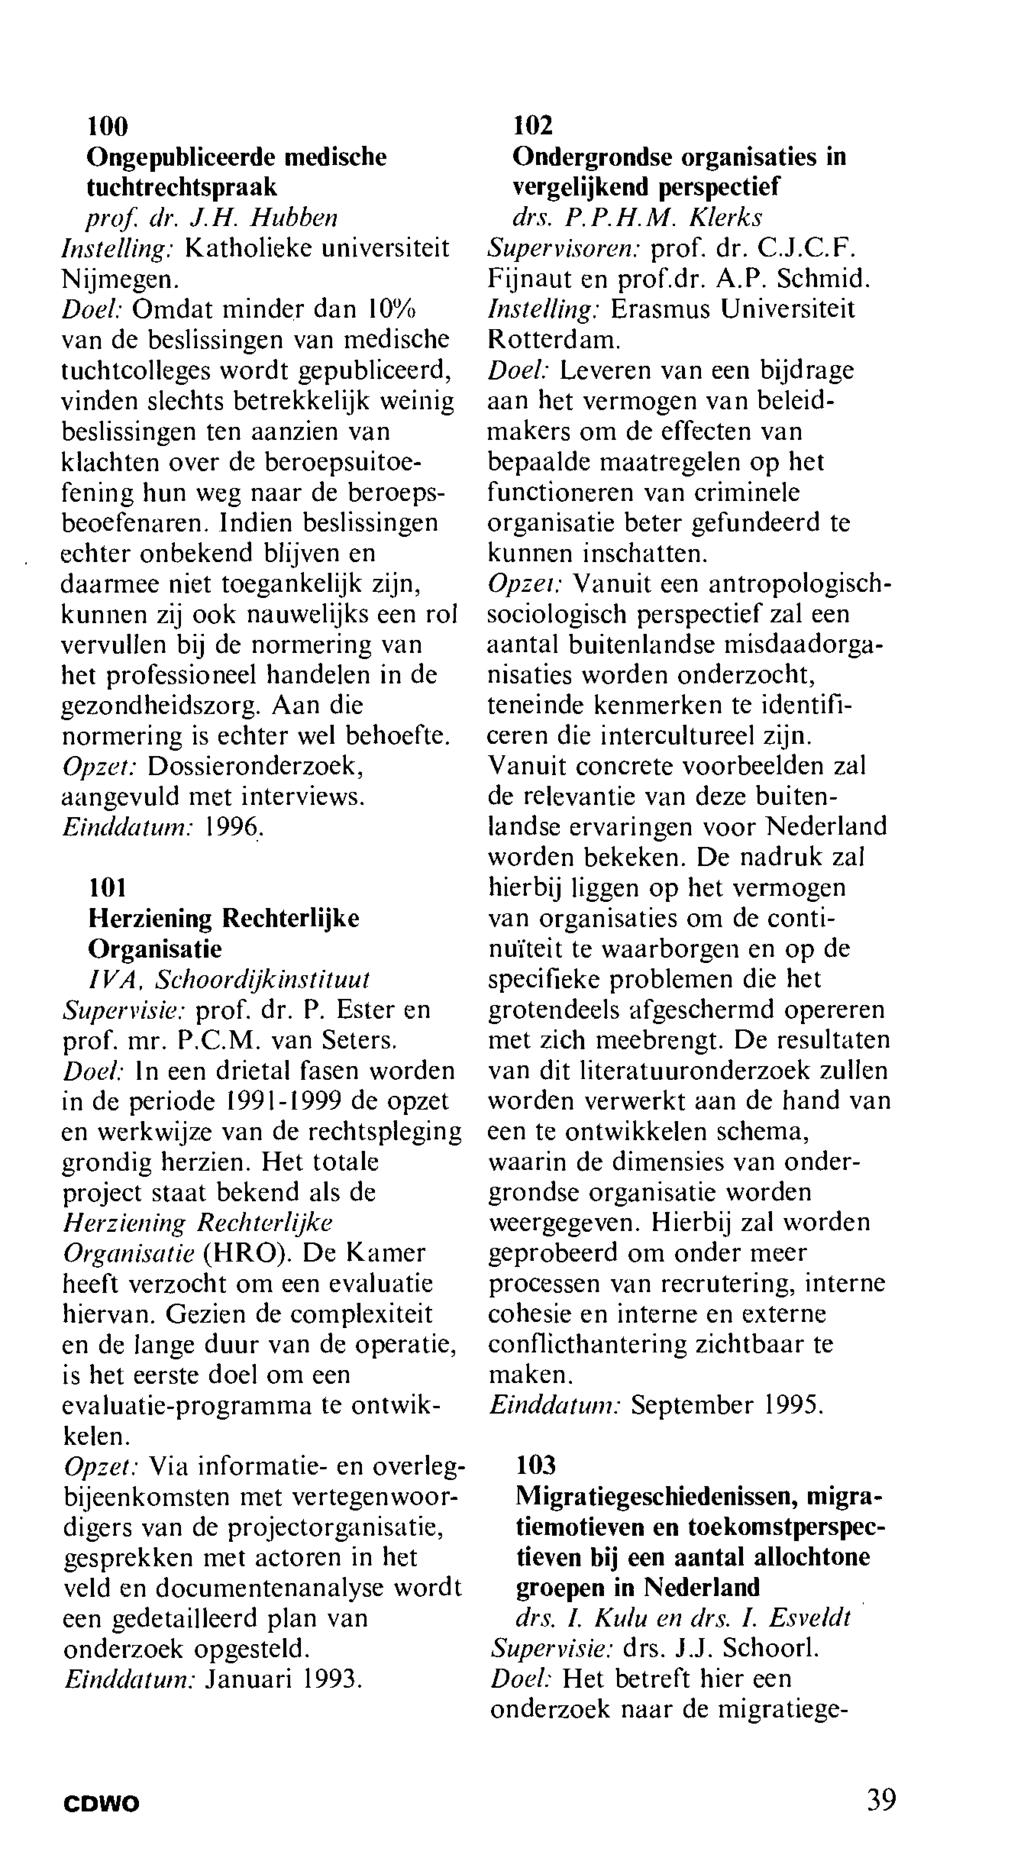 100 Ongepubliceerde medische tuchtrechtspraak prof dr. J. H. Hubben Instelling: Katholieke universiteit Nijmegen.